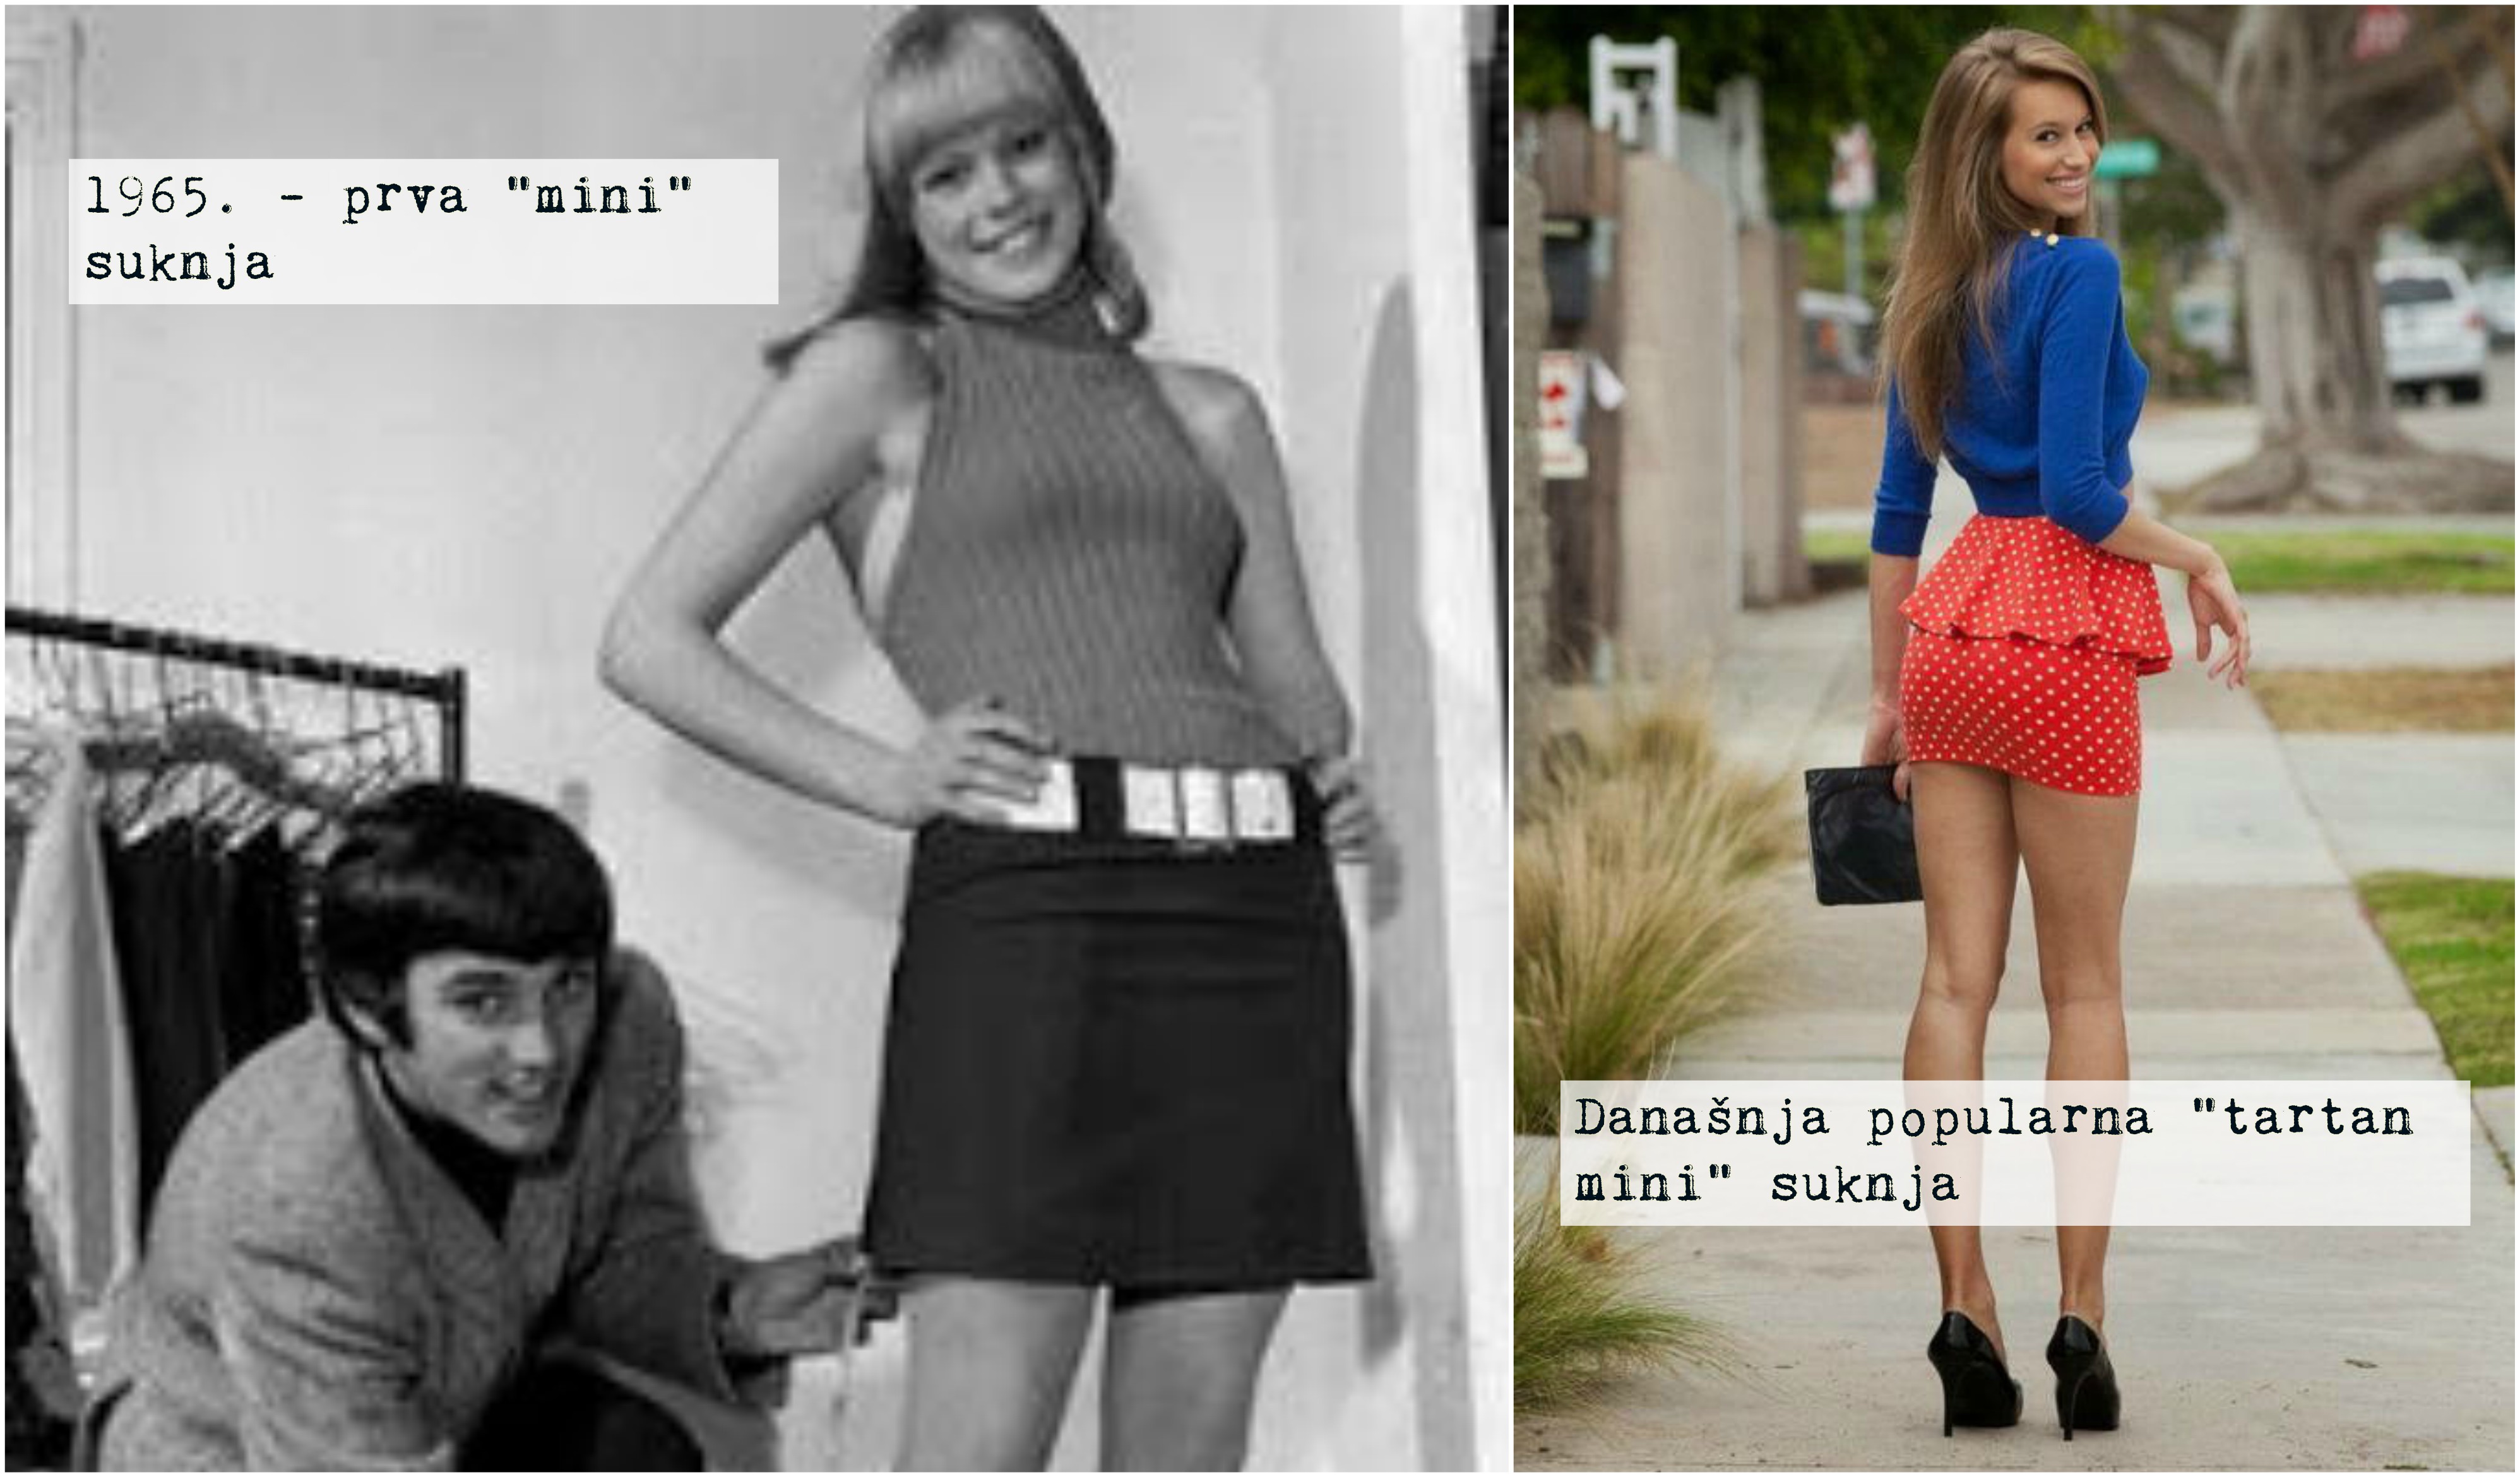 Mini suknjica iz 1965. i danas